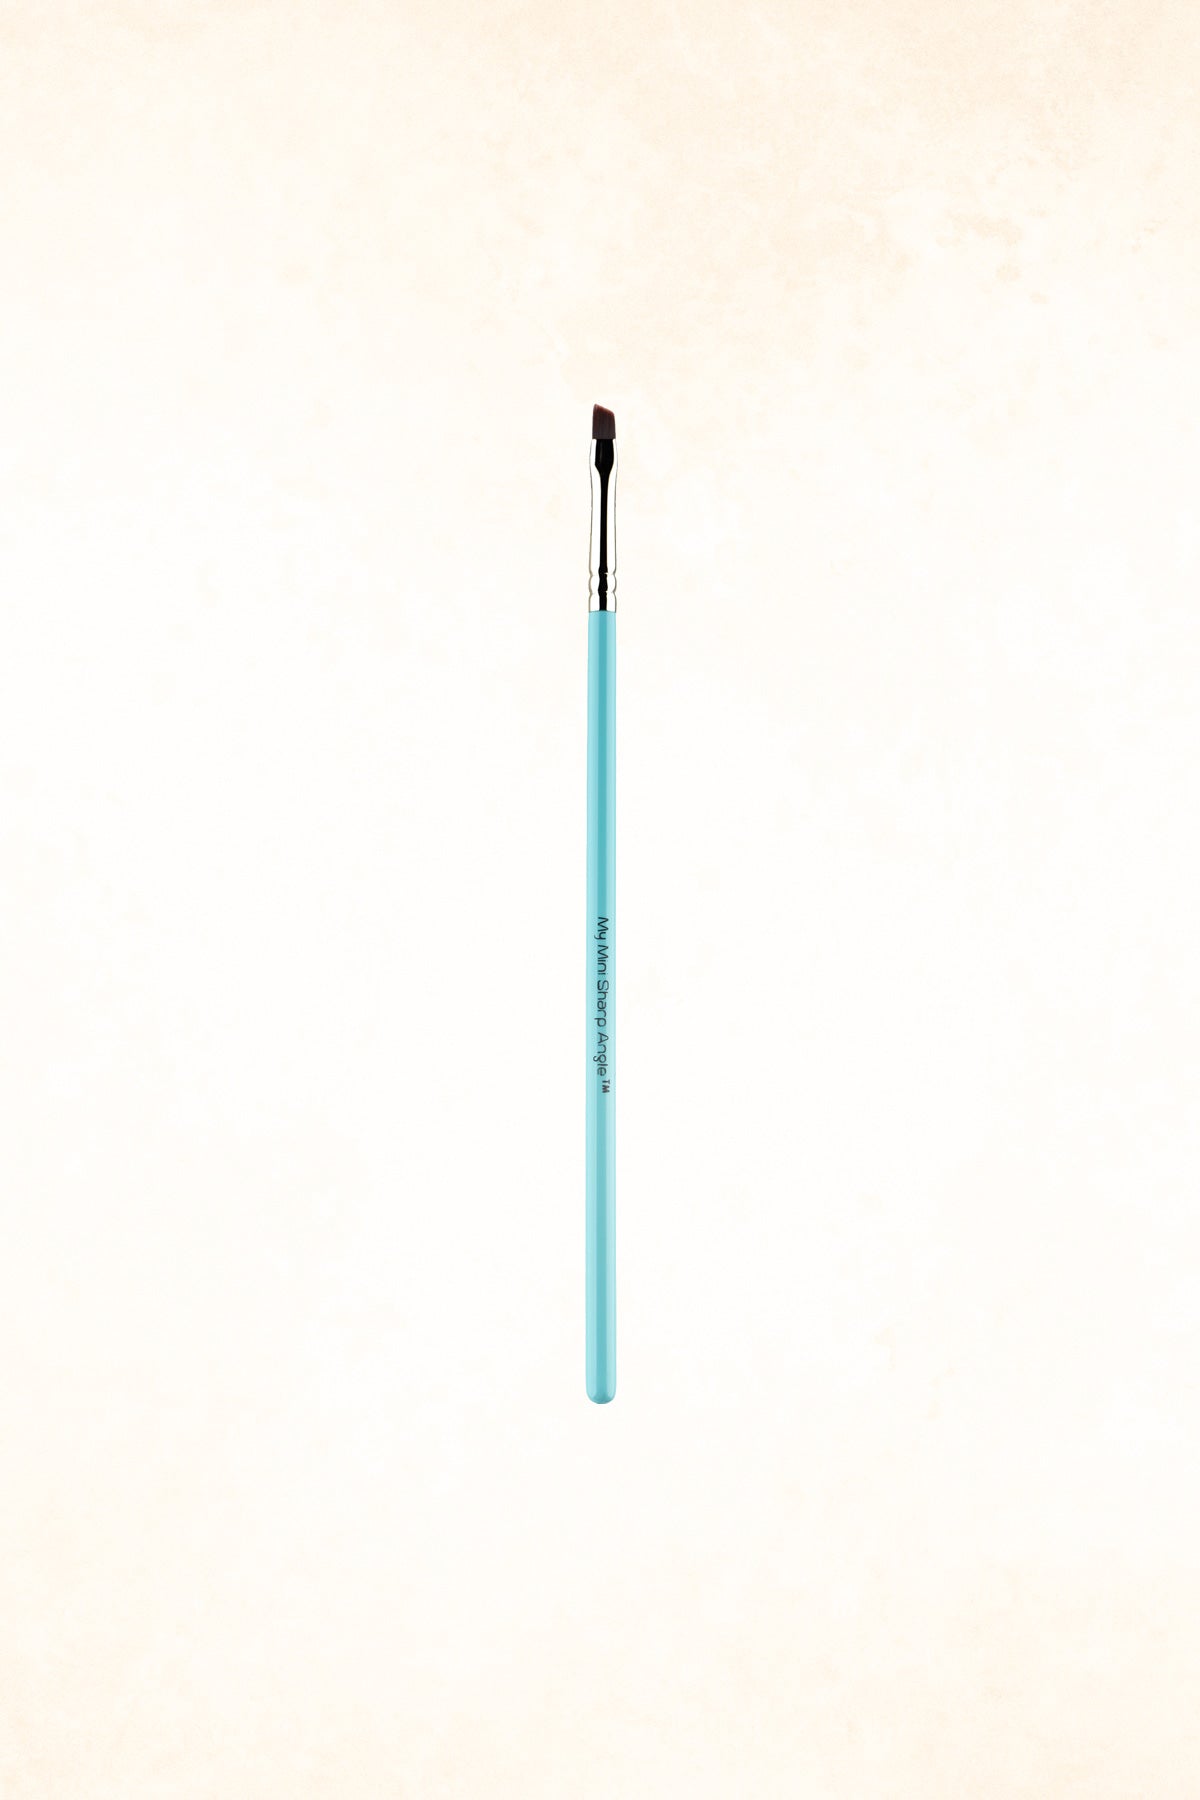 MYKITCO - 1.9 PRO - My Mini Sharp Angle Makeup Brush